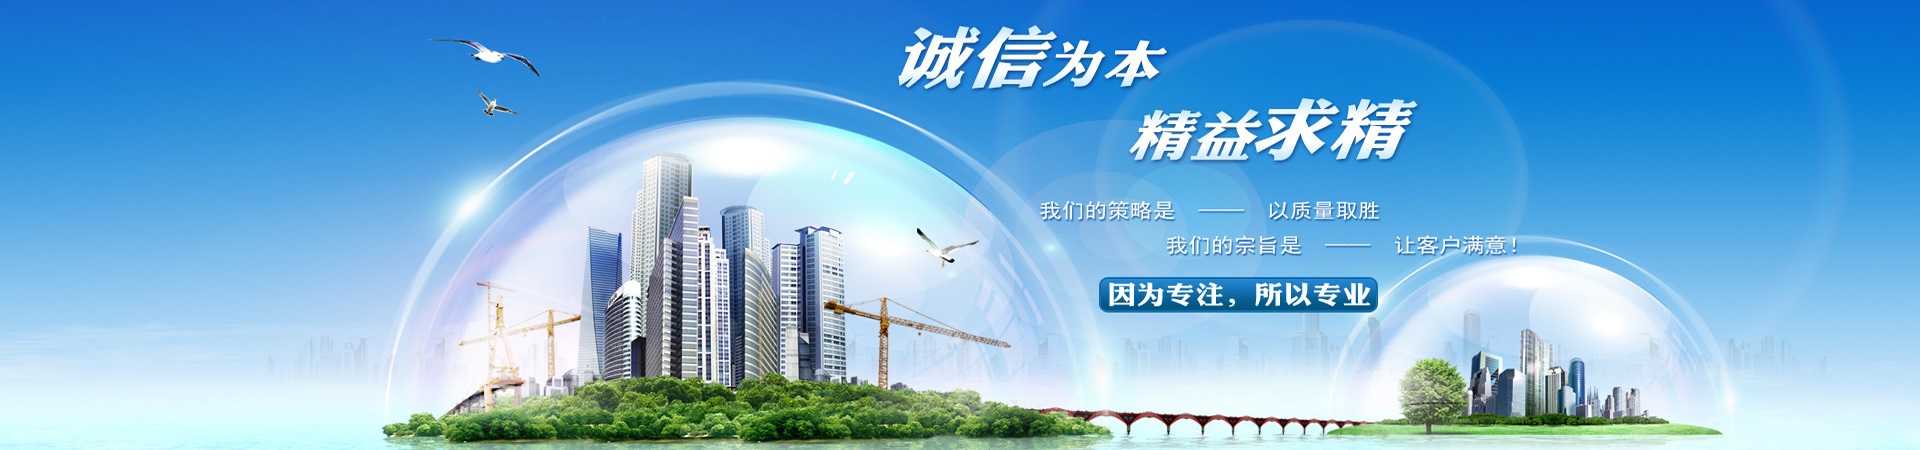 蒸汽管道疏水装置、郑州本地蒸汽管道疏水装置、郑州、郑州蒸汽管道疏水装置